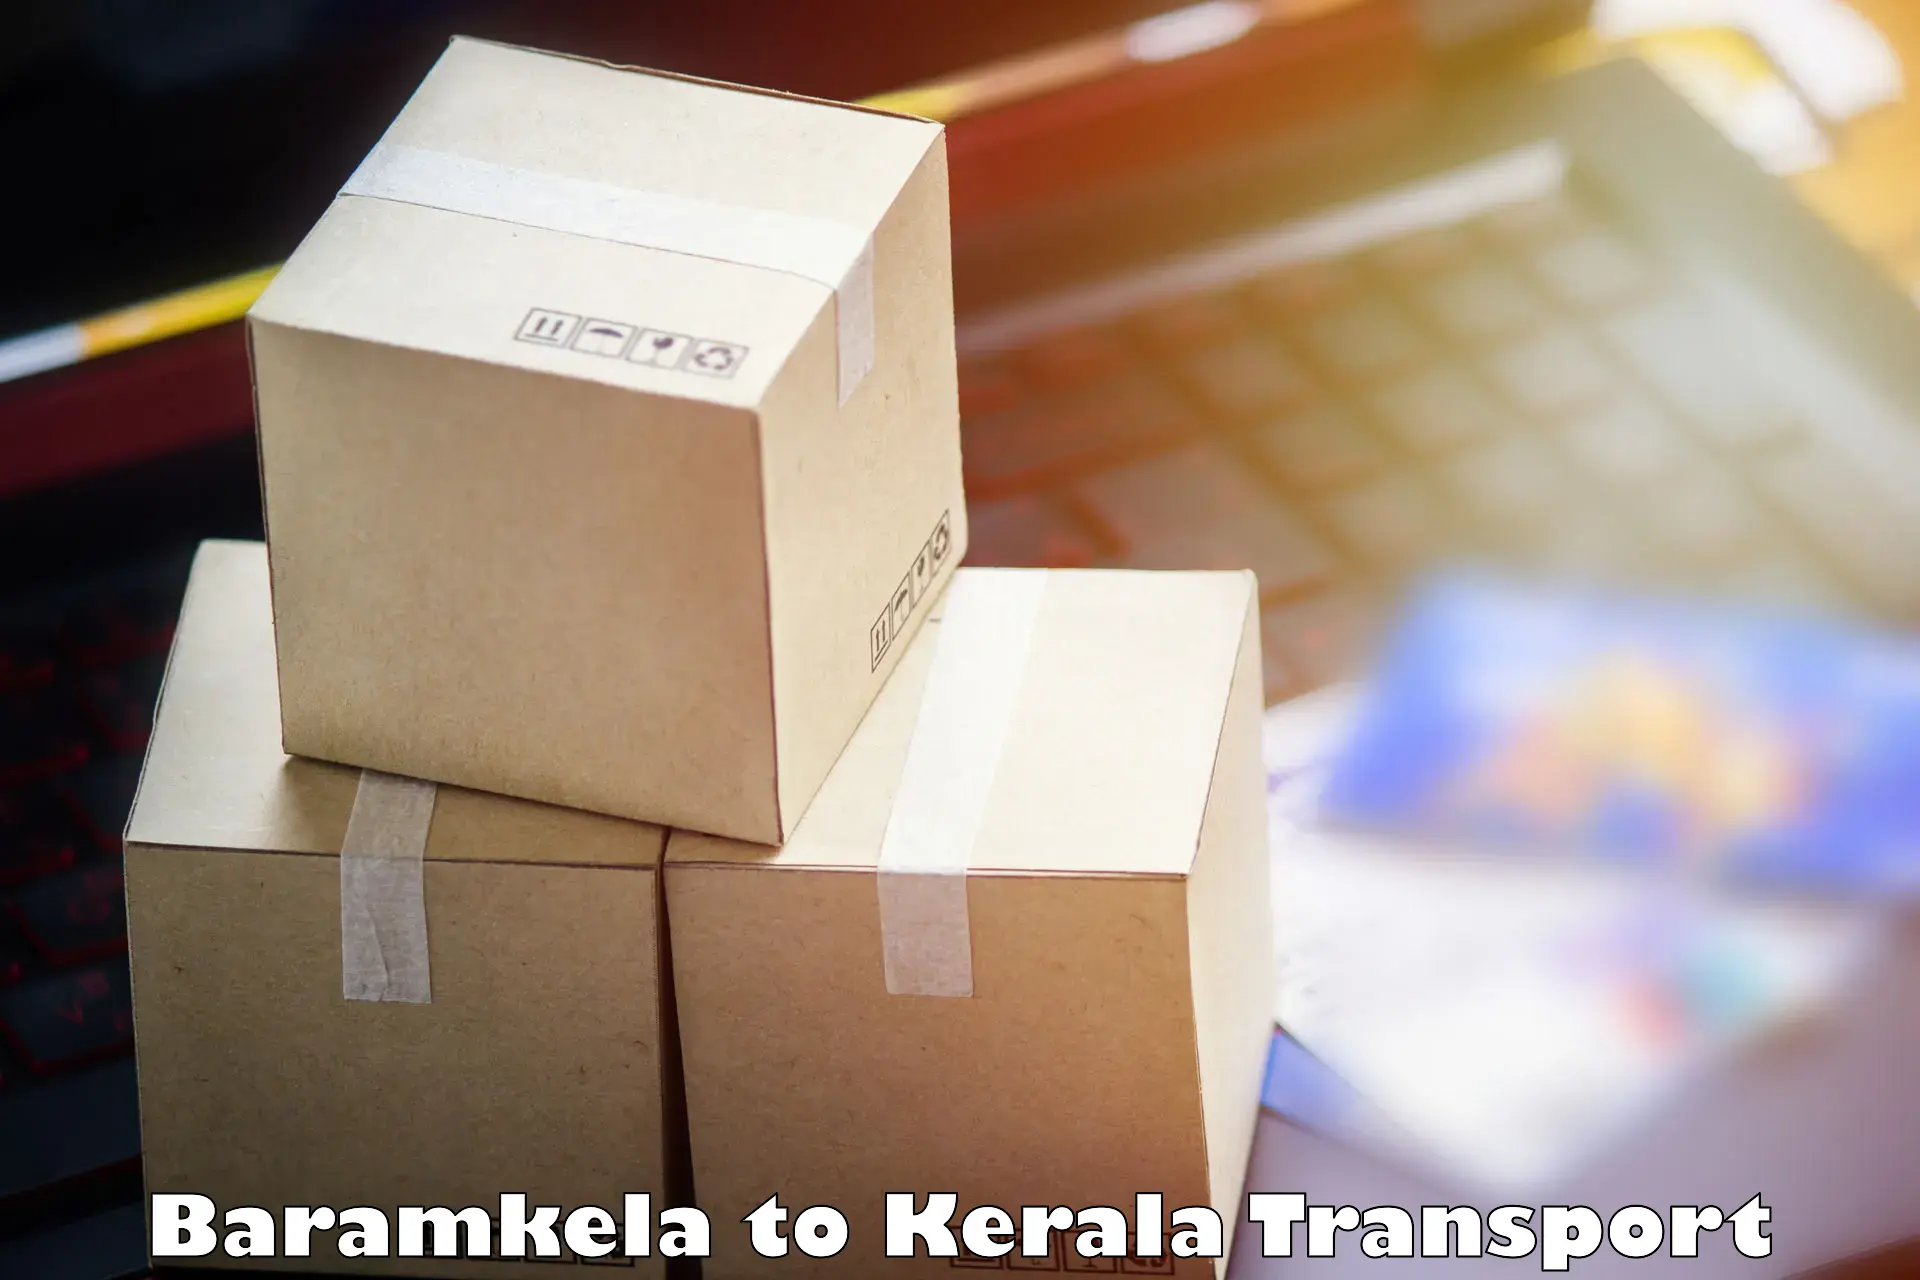 Shipping services Baramkela to Kuttiady